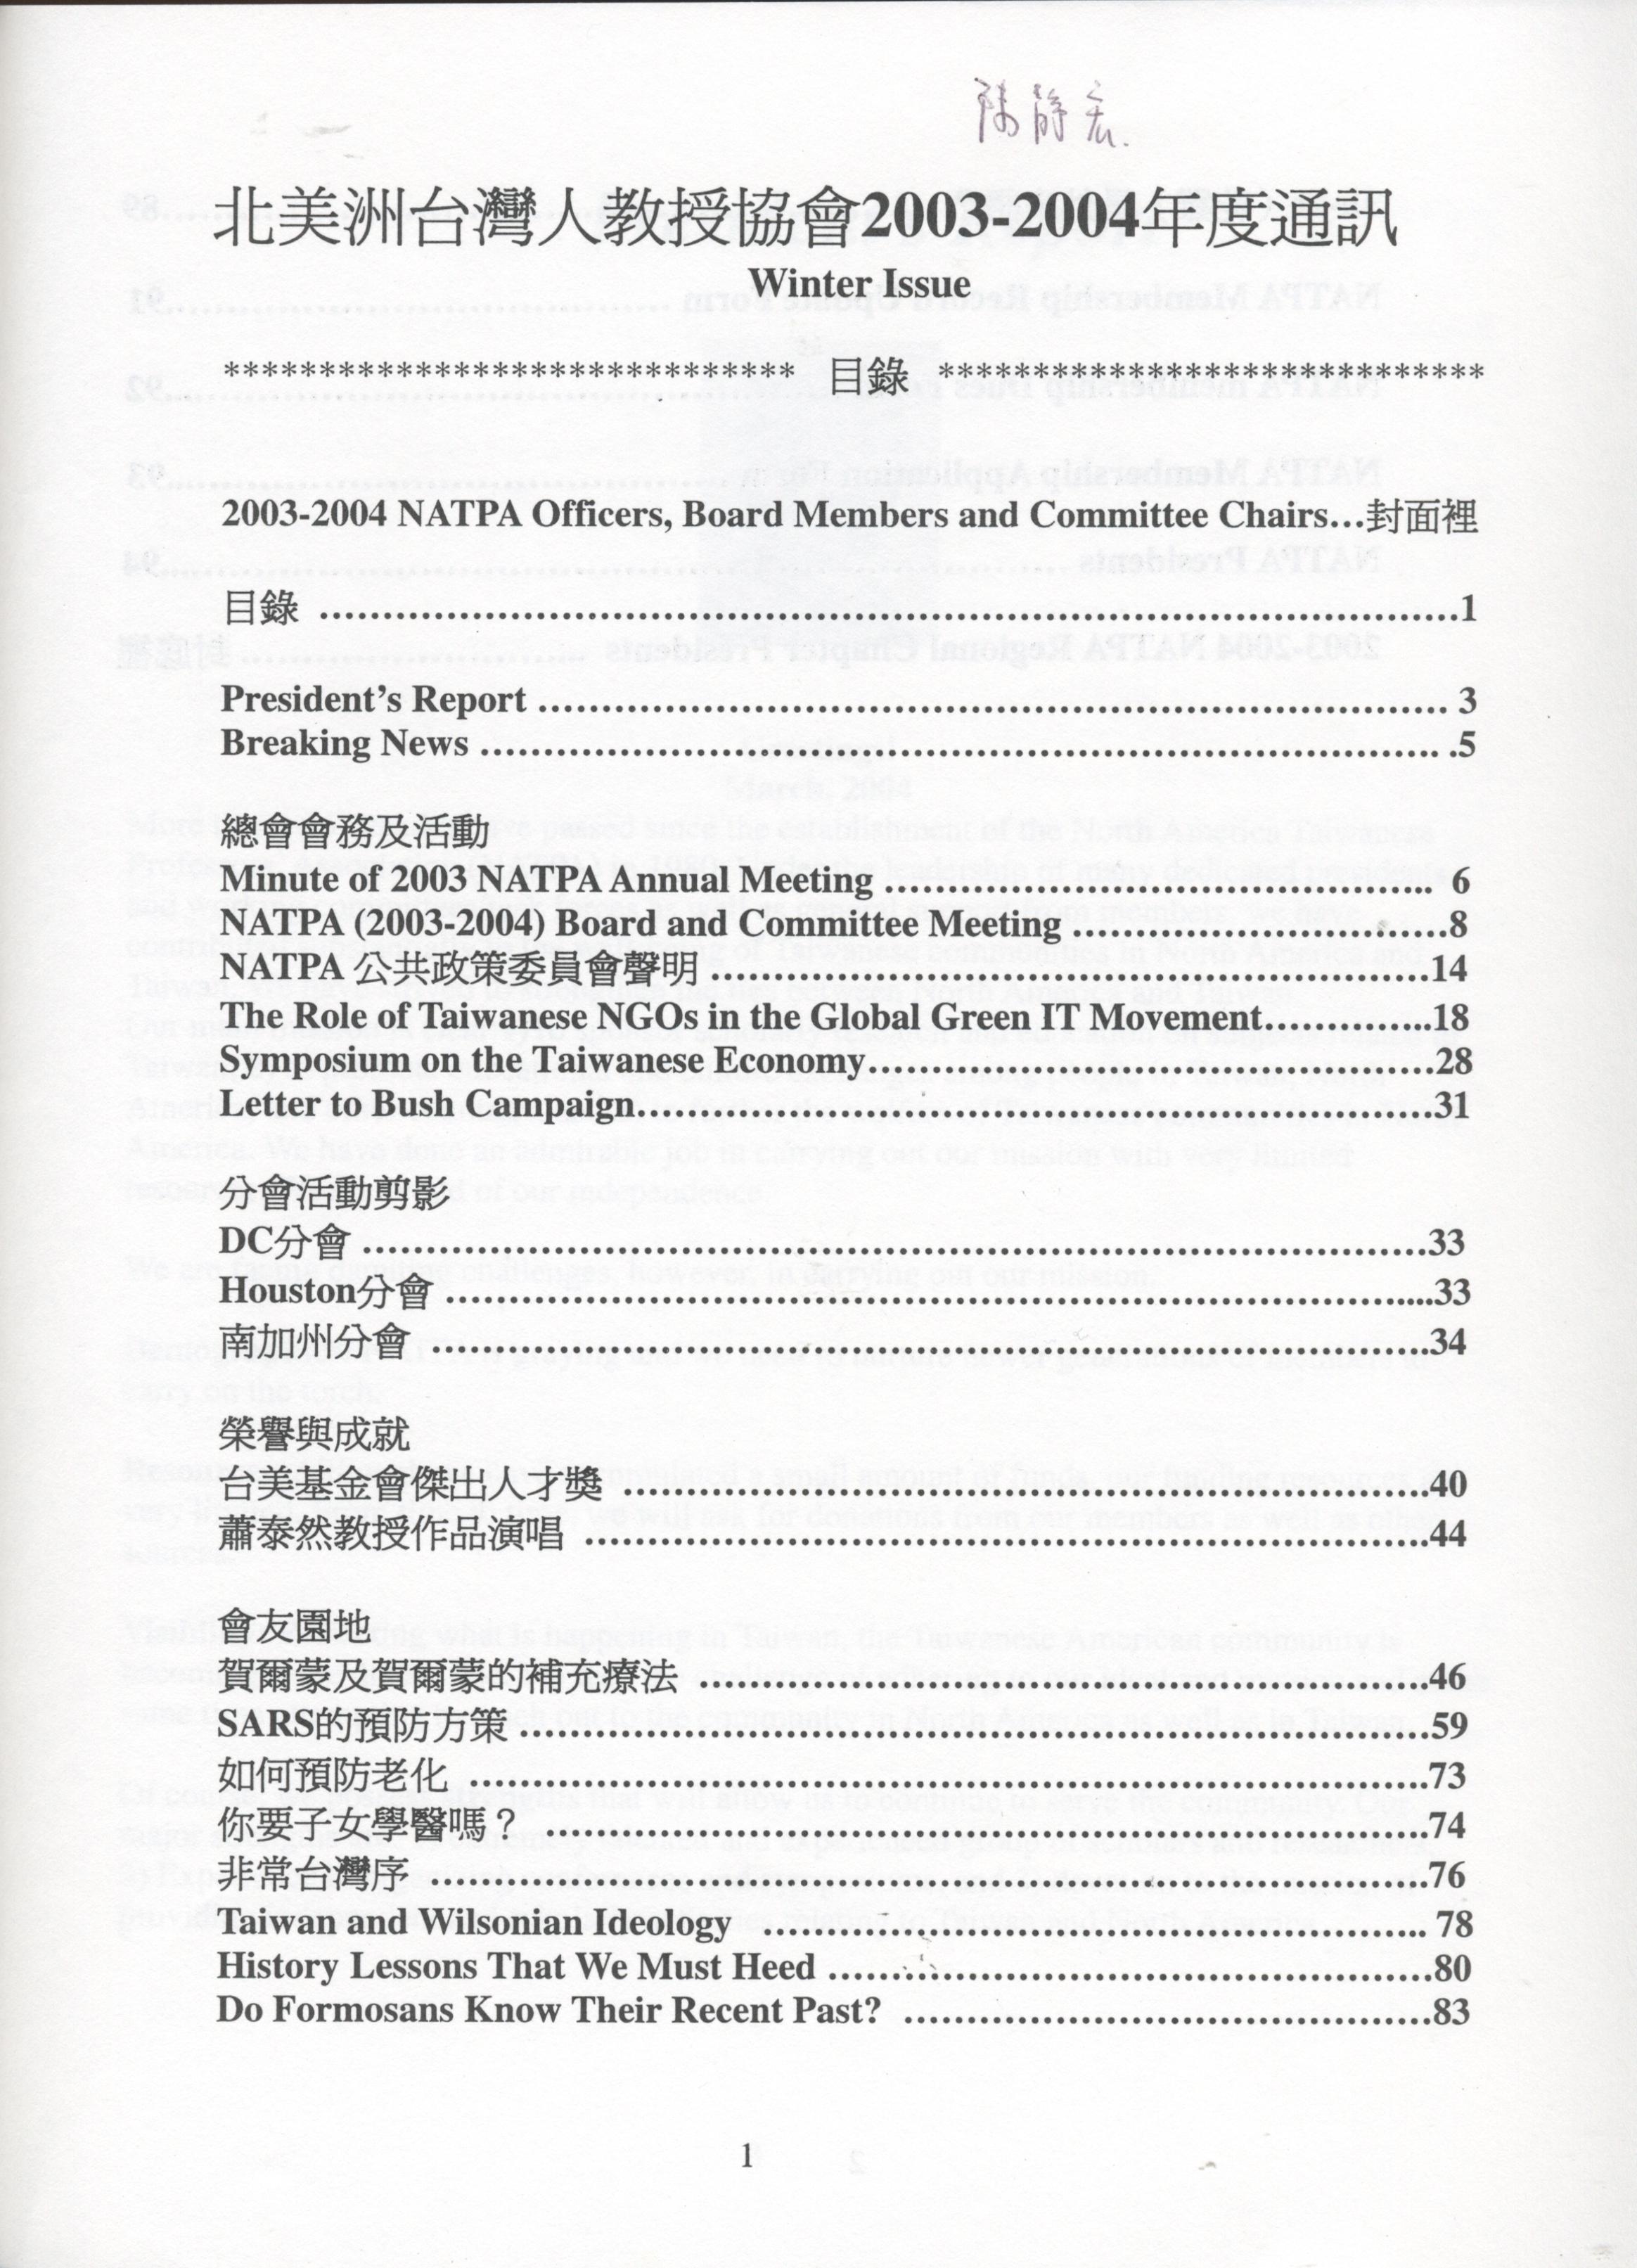 230_北美洲台灣人教授協會2004通訊-2